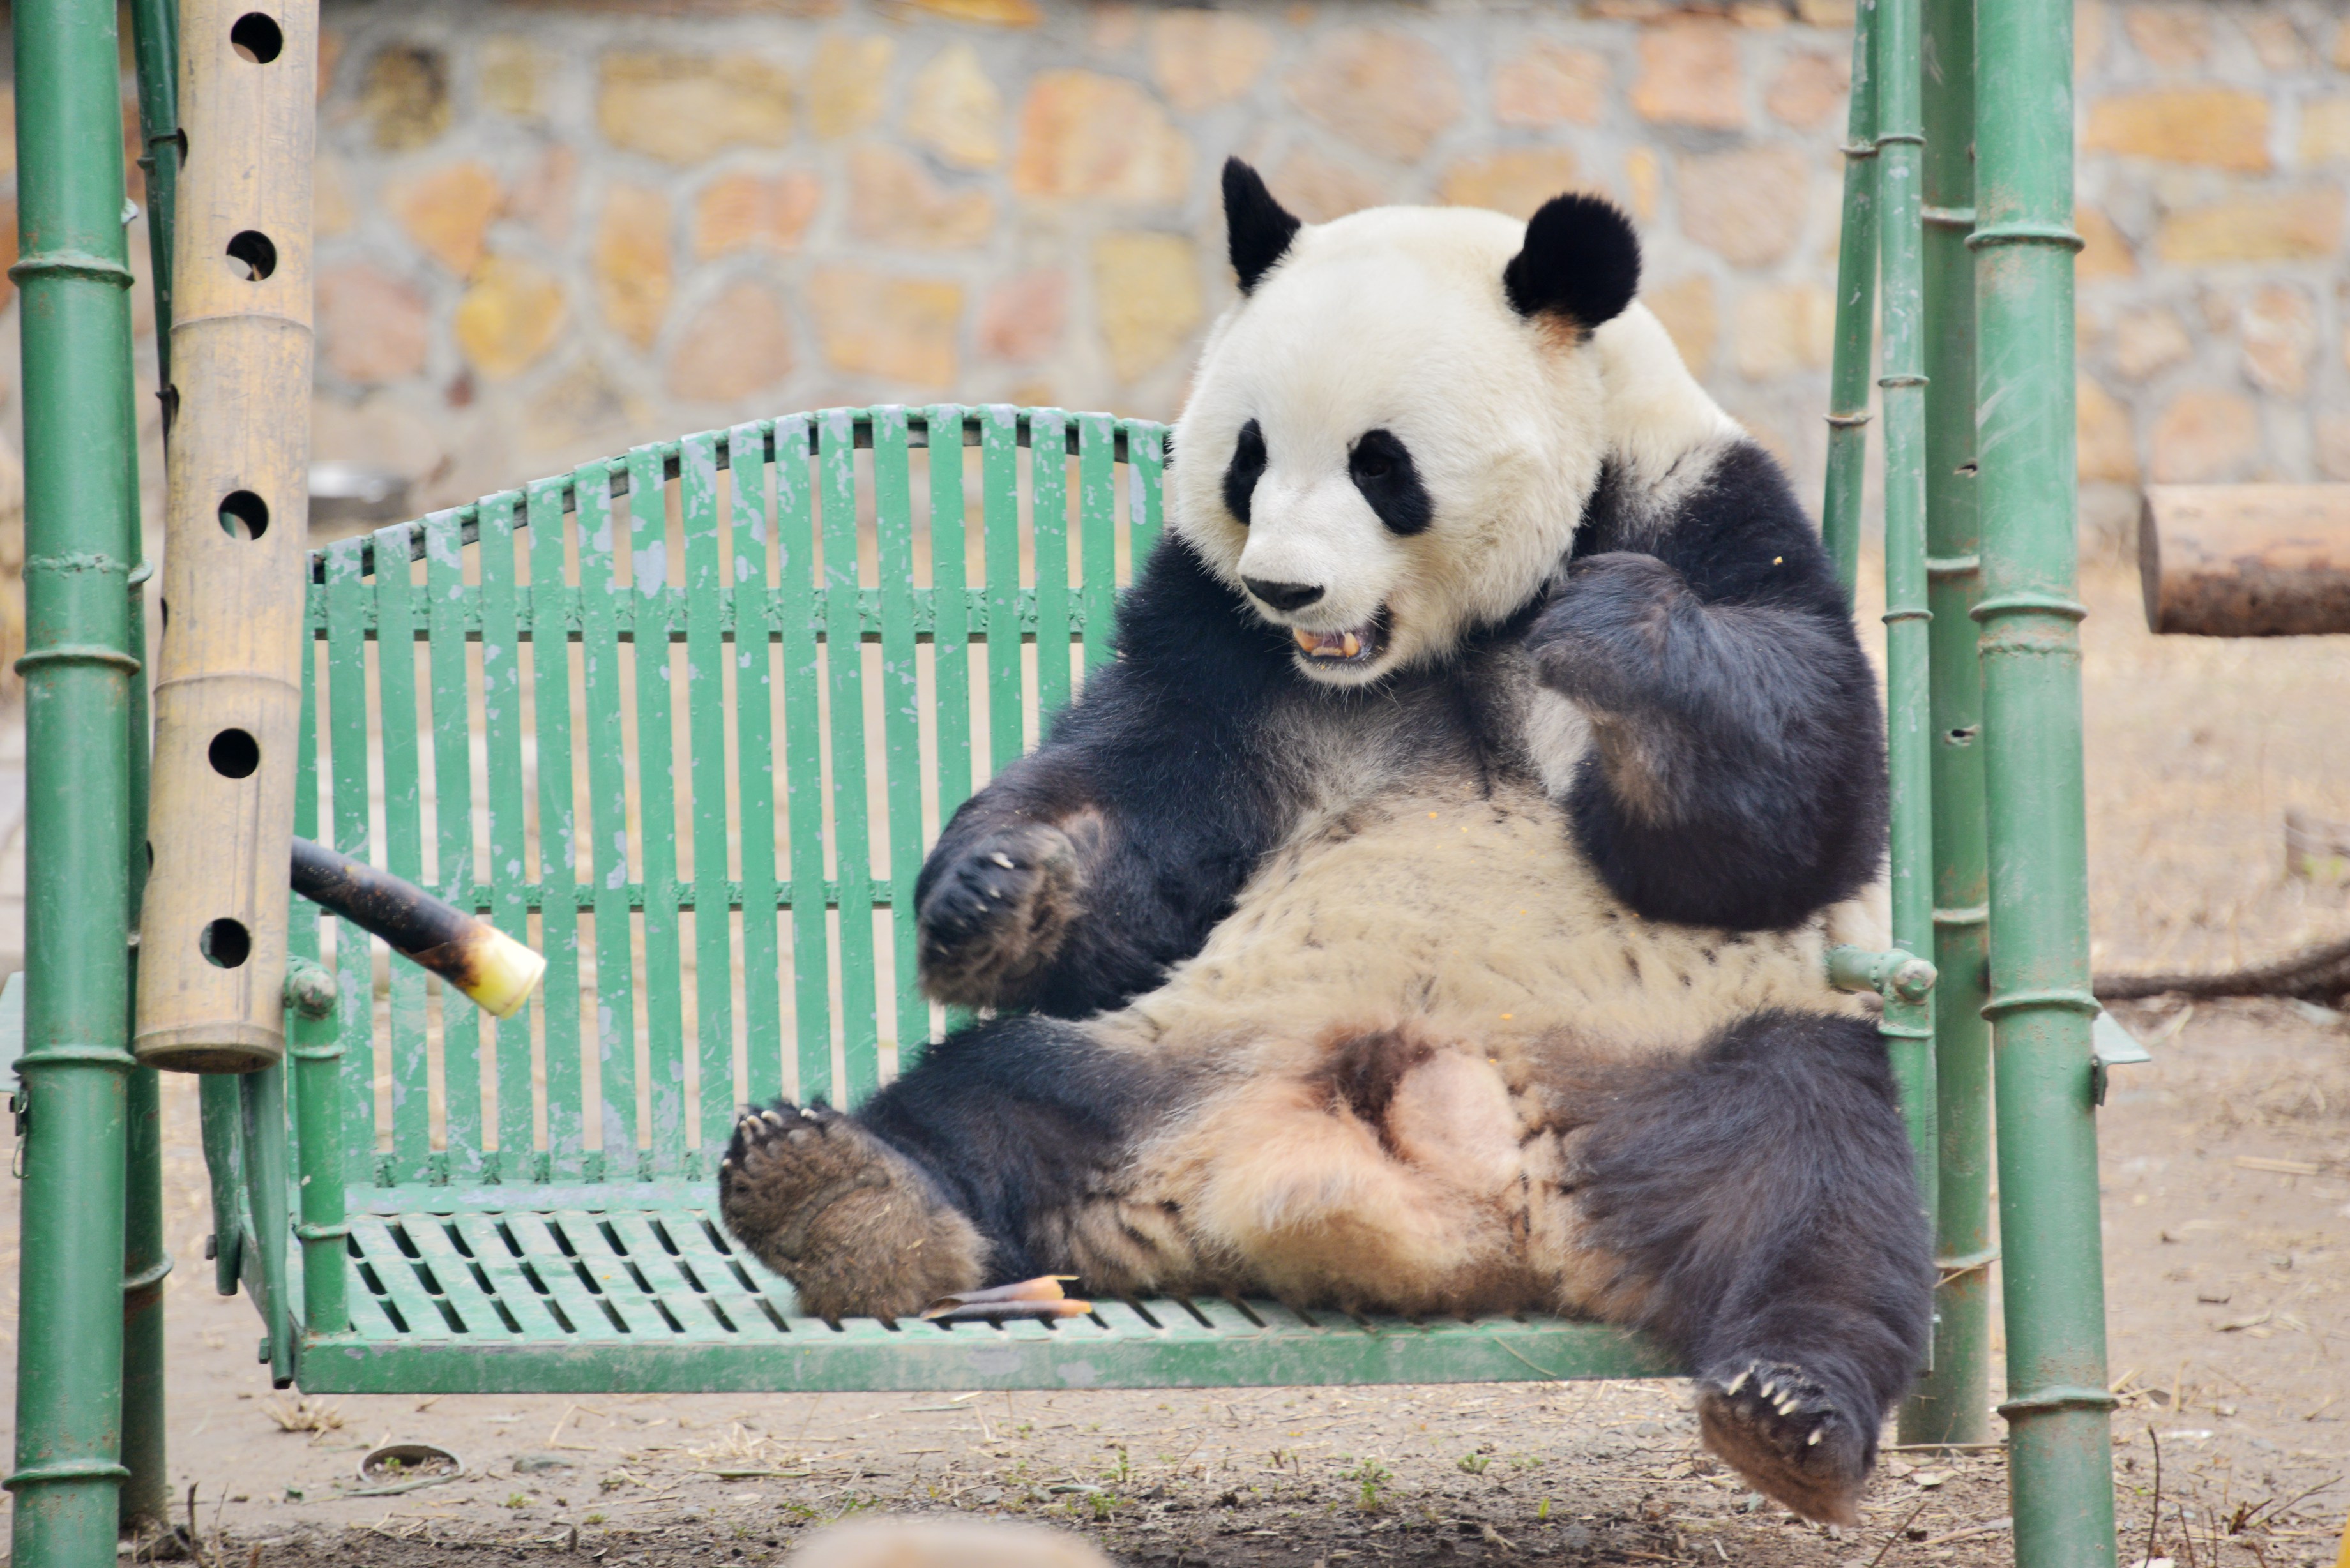 资料图片:2021年3月19日,北京,大熊猫在开心的吃着竹笋点心